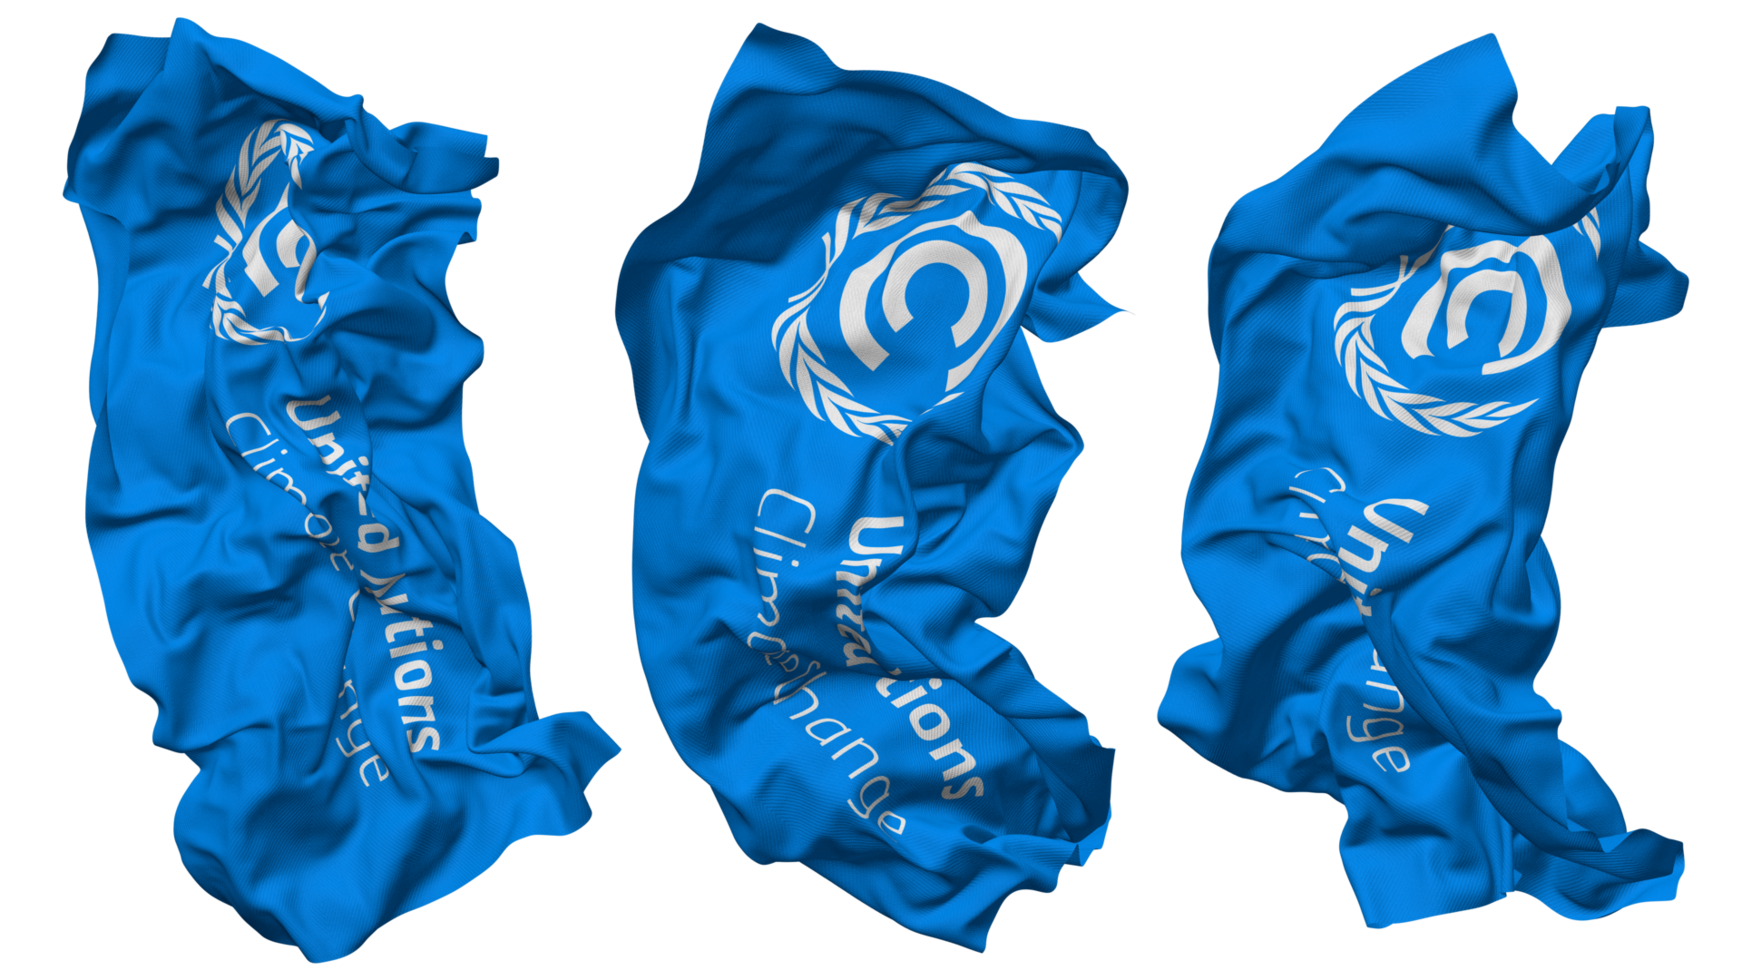 unido naciones marco de referencia convención en clima cambiar, UNFCCC bandera olas aislado en diferente estilos con bache textura, 3d representación png